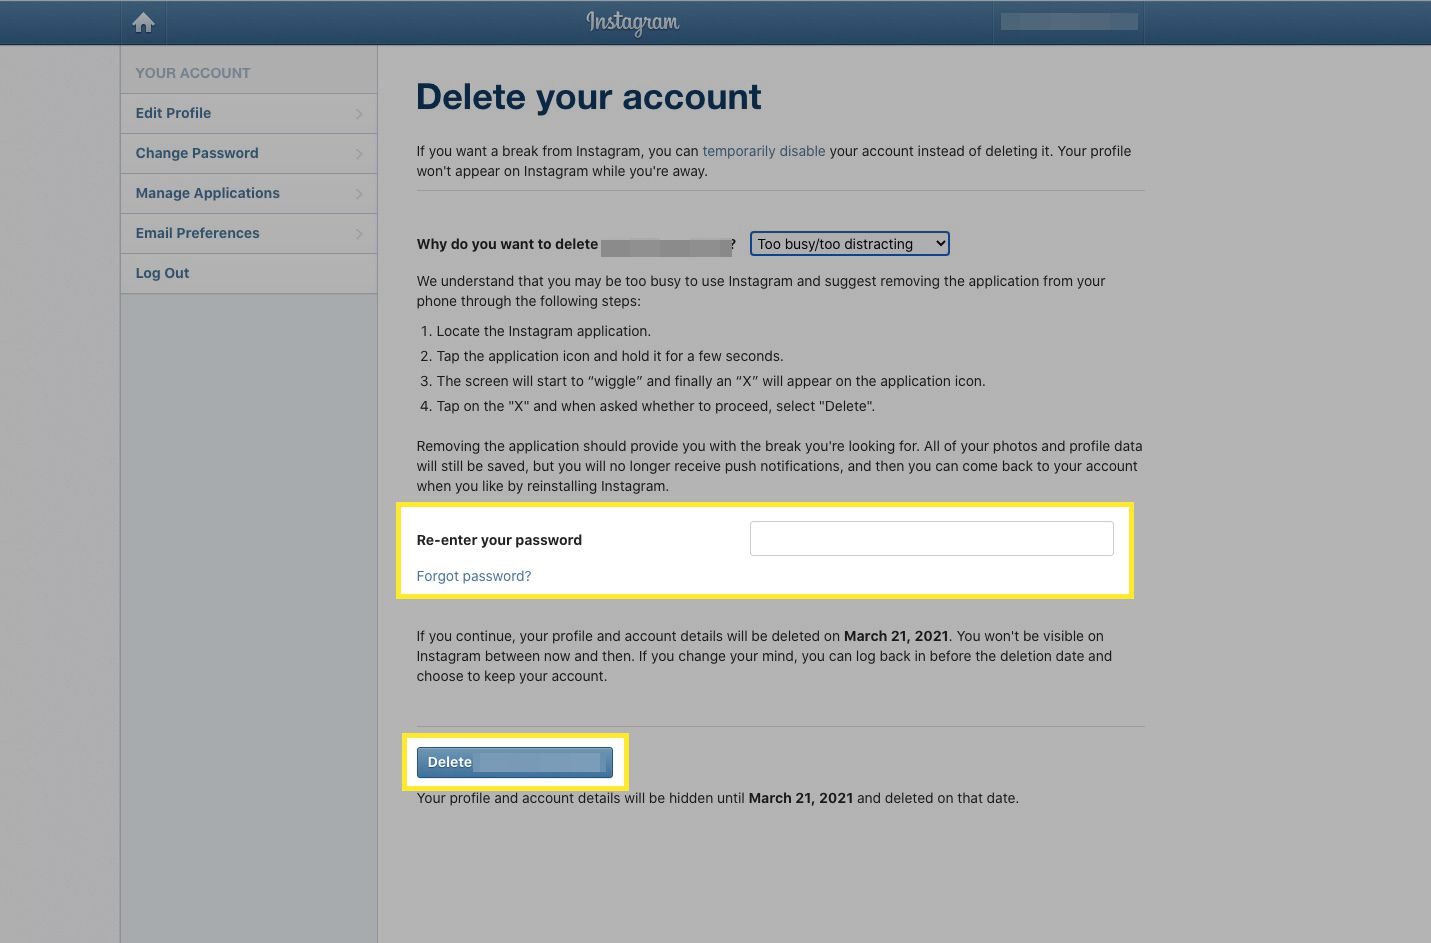 Pokud chcete pokračovat v mazání účtu, zadejte své heslo a vyberte Odstranit [your account name]. 